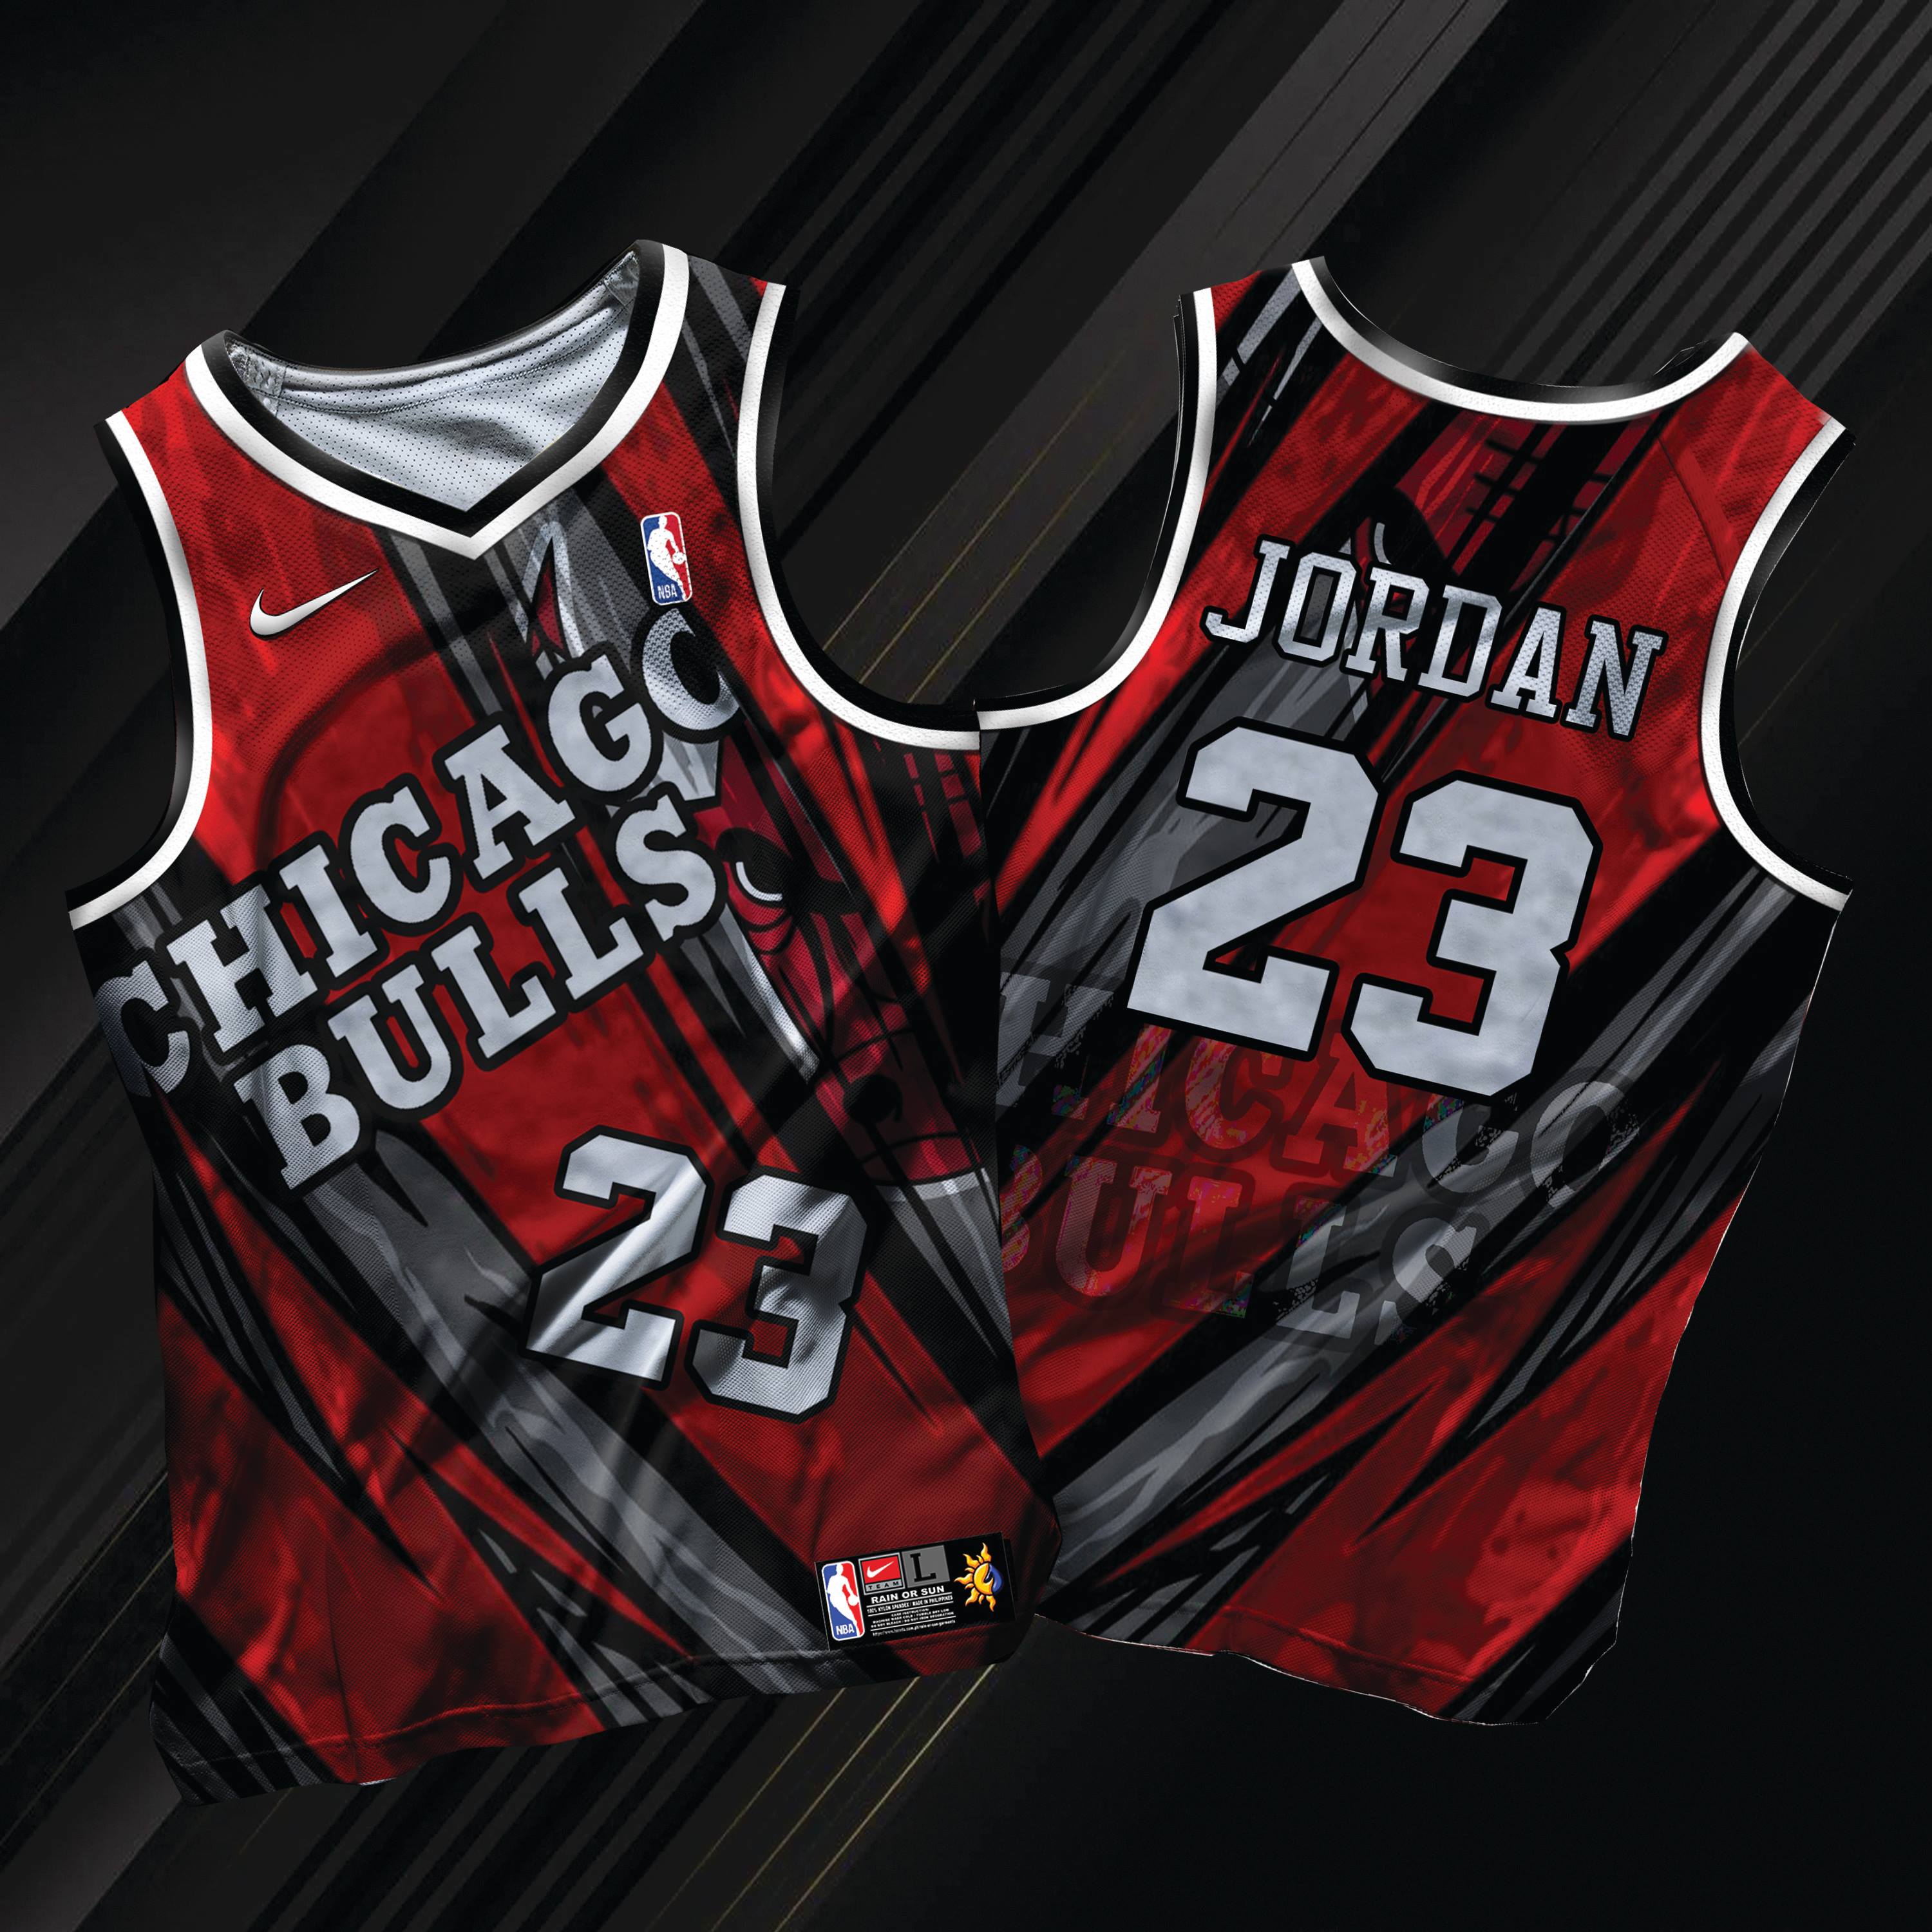 bulls basketball jersey design